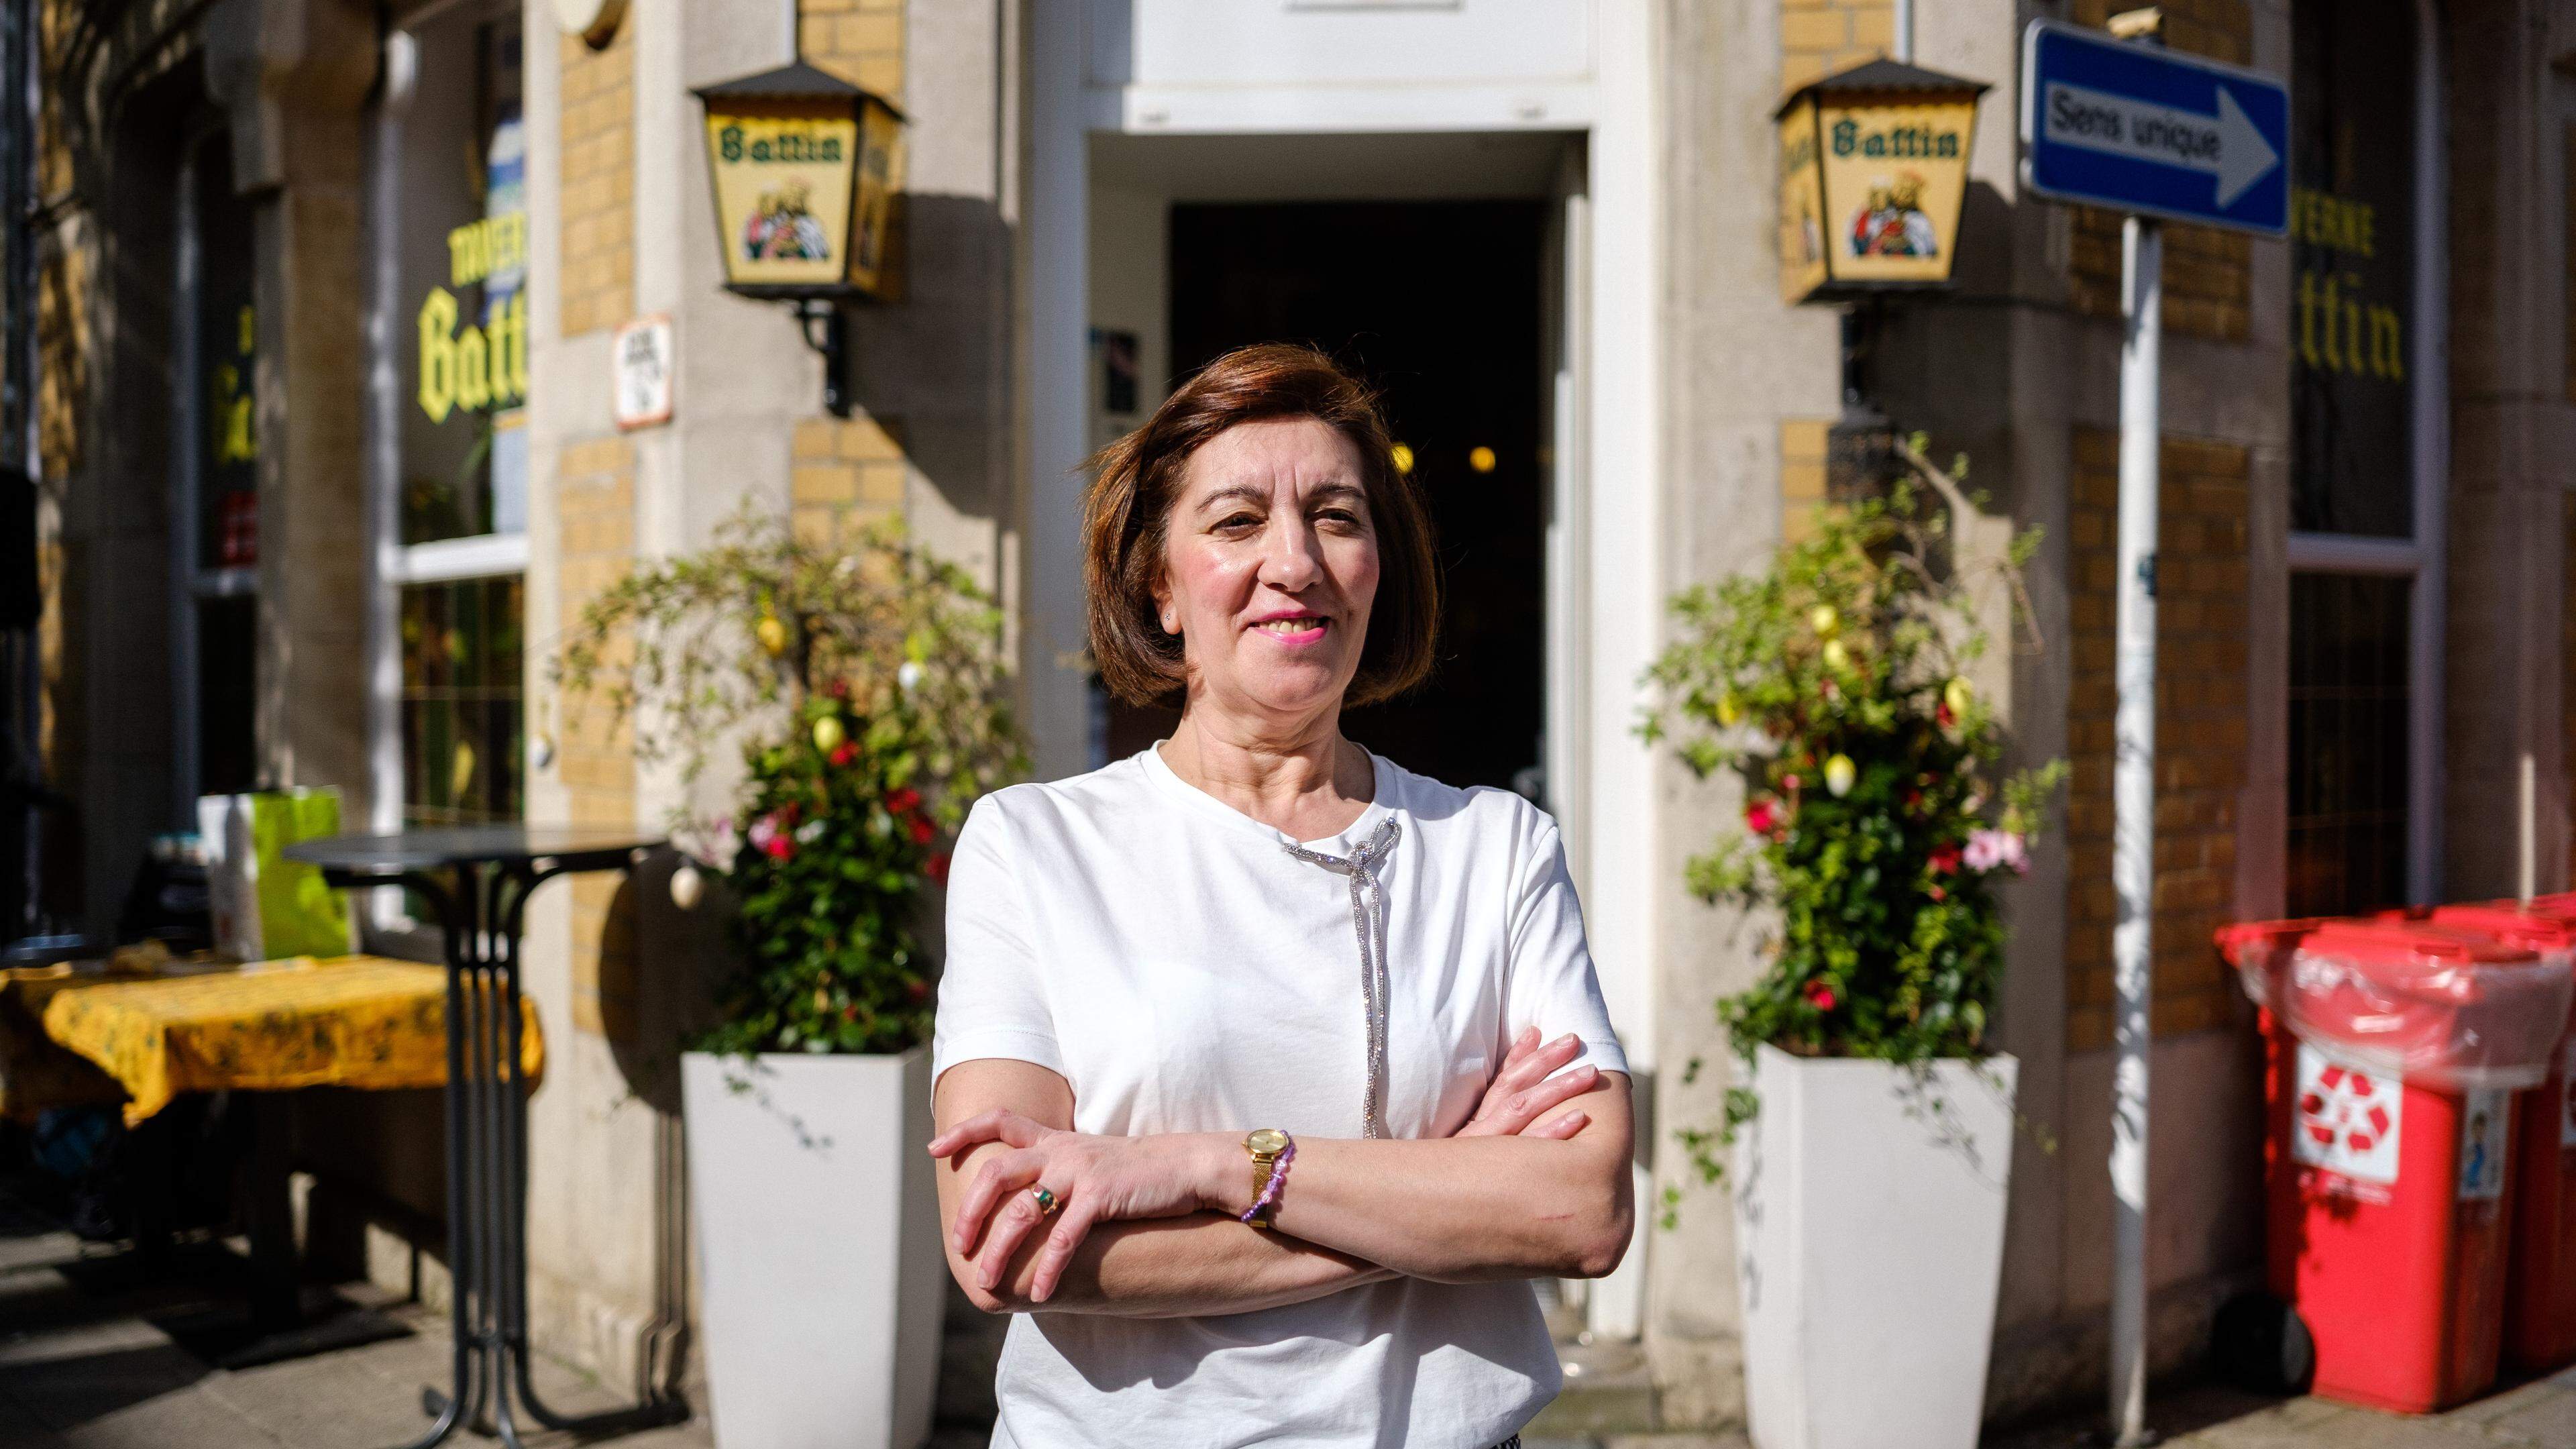 Die 60-jährige Anita Dias leitete die Taverne Battin seit 1989.